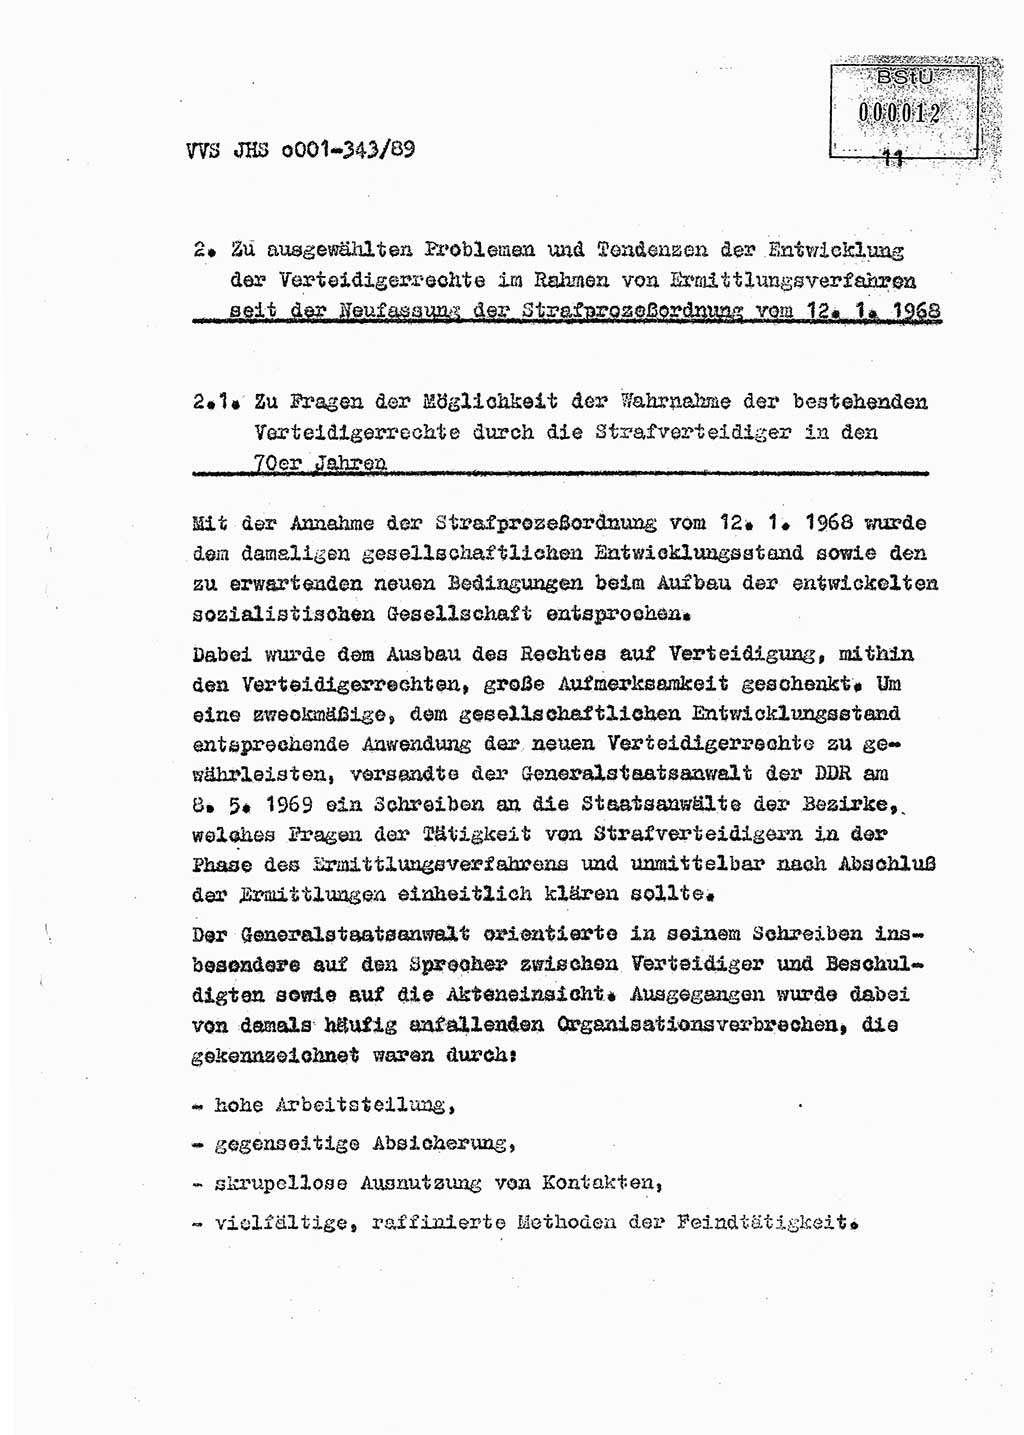 Diplomarbeit Offiziersschüler Axel Henschke (HA Ⅸ/9), Ministerium für Staatssicherheit (MfS) [Deutsche Demokratische Republik (DDR)], Juristische Hochschule (JHS), Vertrauliche Verschlußsache (VVS) o001-343/89, Potsdam 1989, Seite 11 (Dipl.-Arb. MfS DDR JHS VVS o001-343/89 1989, S. 11)